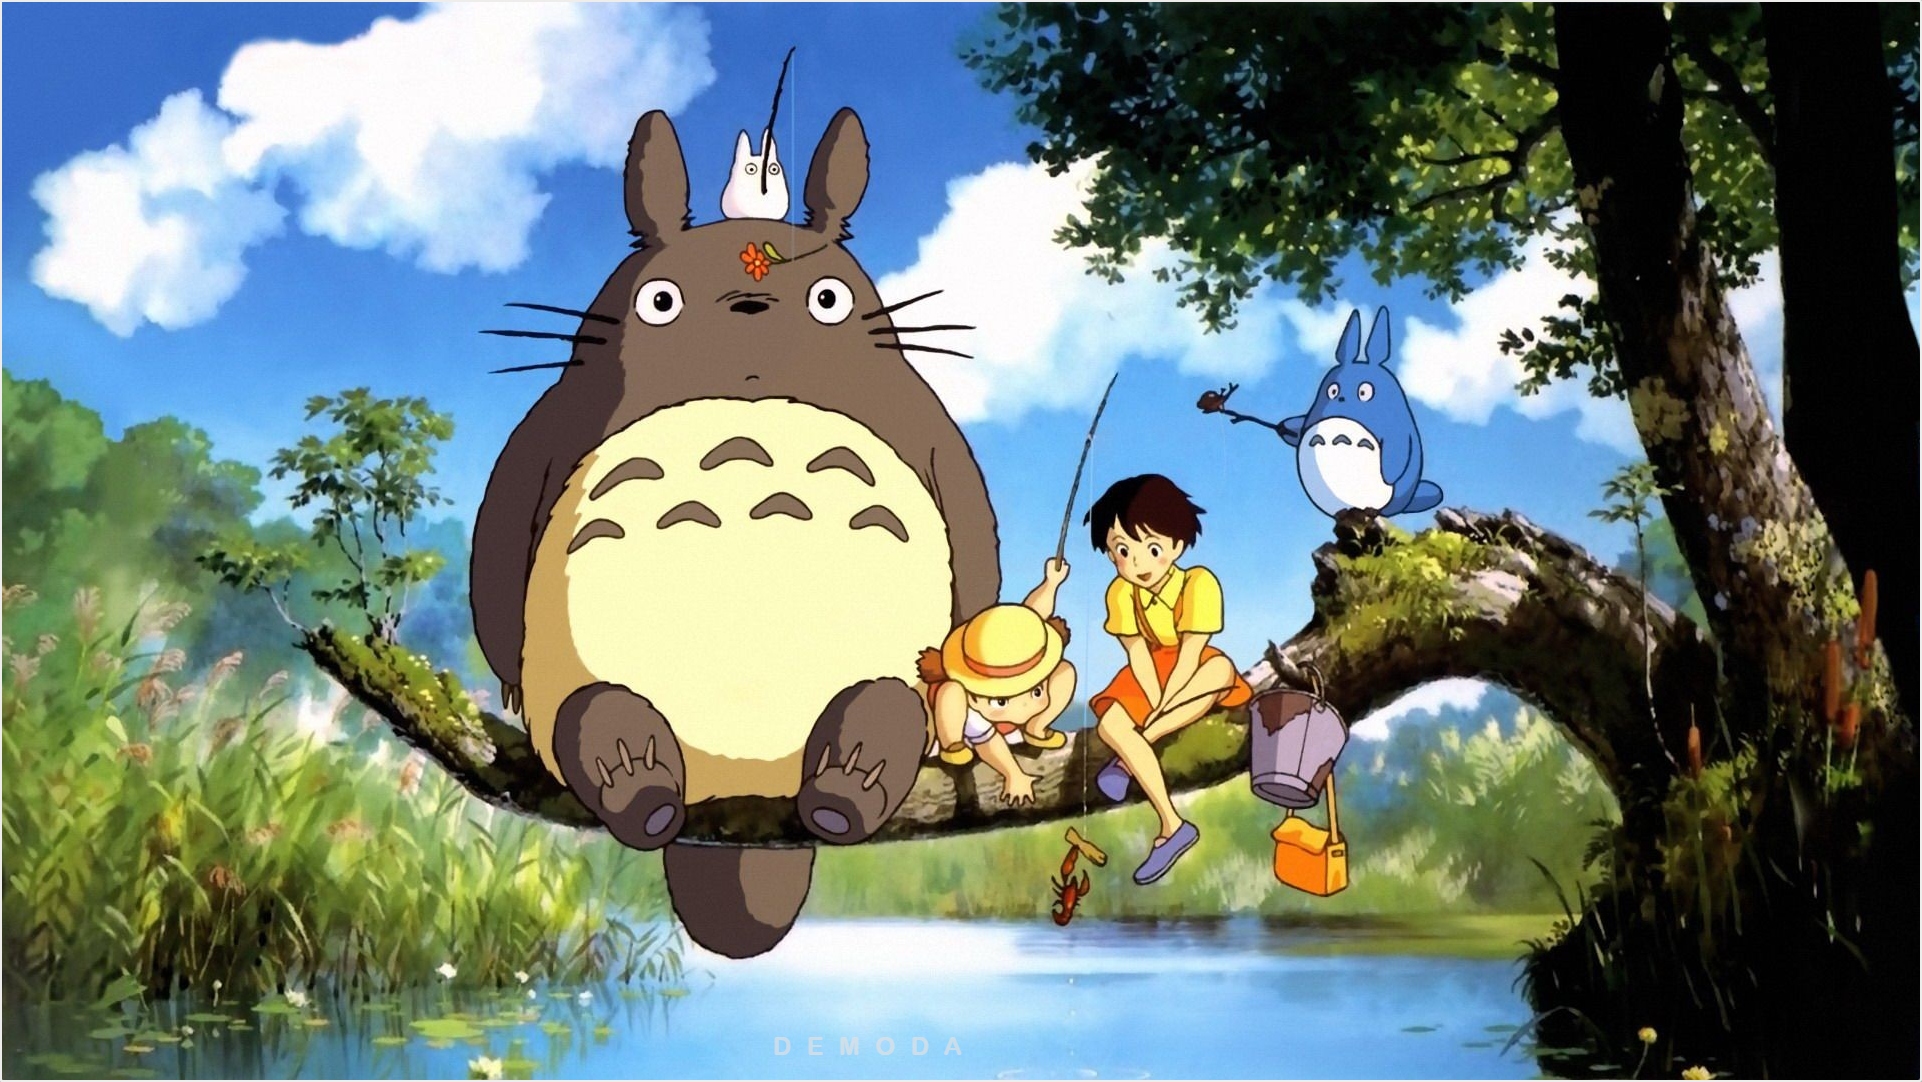 Totoro: Hãy cùng thưởng thức hình ảnh Totoro - một loài vật huyền thoại đầy đáng yêu và tuyệt vời này! Với tấm ảnh này, bạn sẽ được chiêm ngưỡng Totoro trong toàn vẹn với bầu trời trong xanh và cỏ cây mướt mát. Hãy cùng khám phá và vui chơi với Totoro nhé!